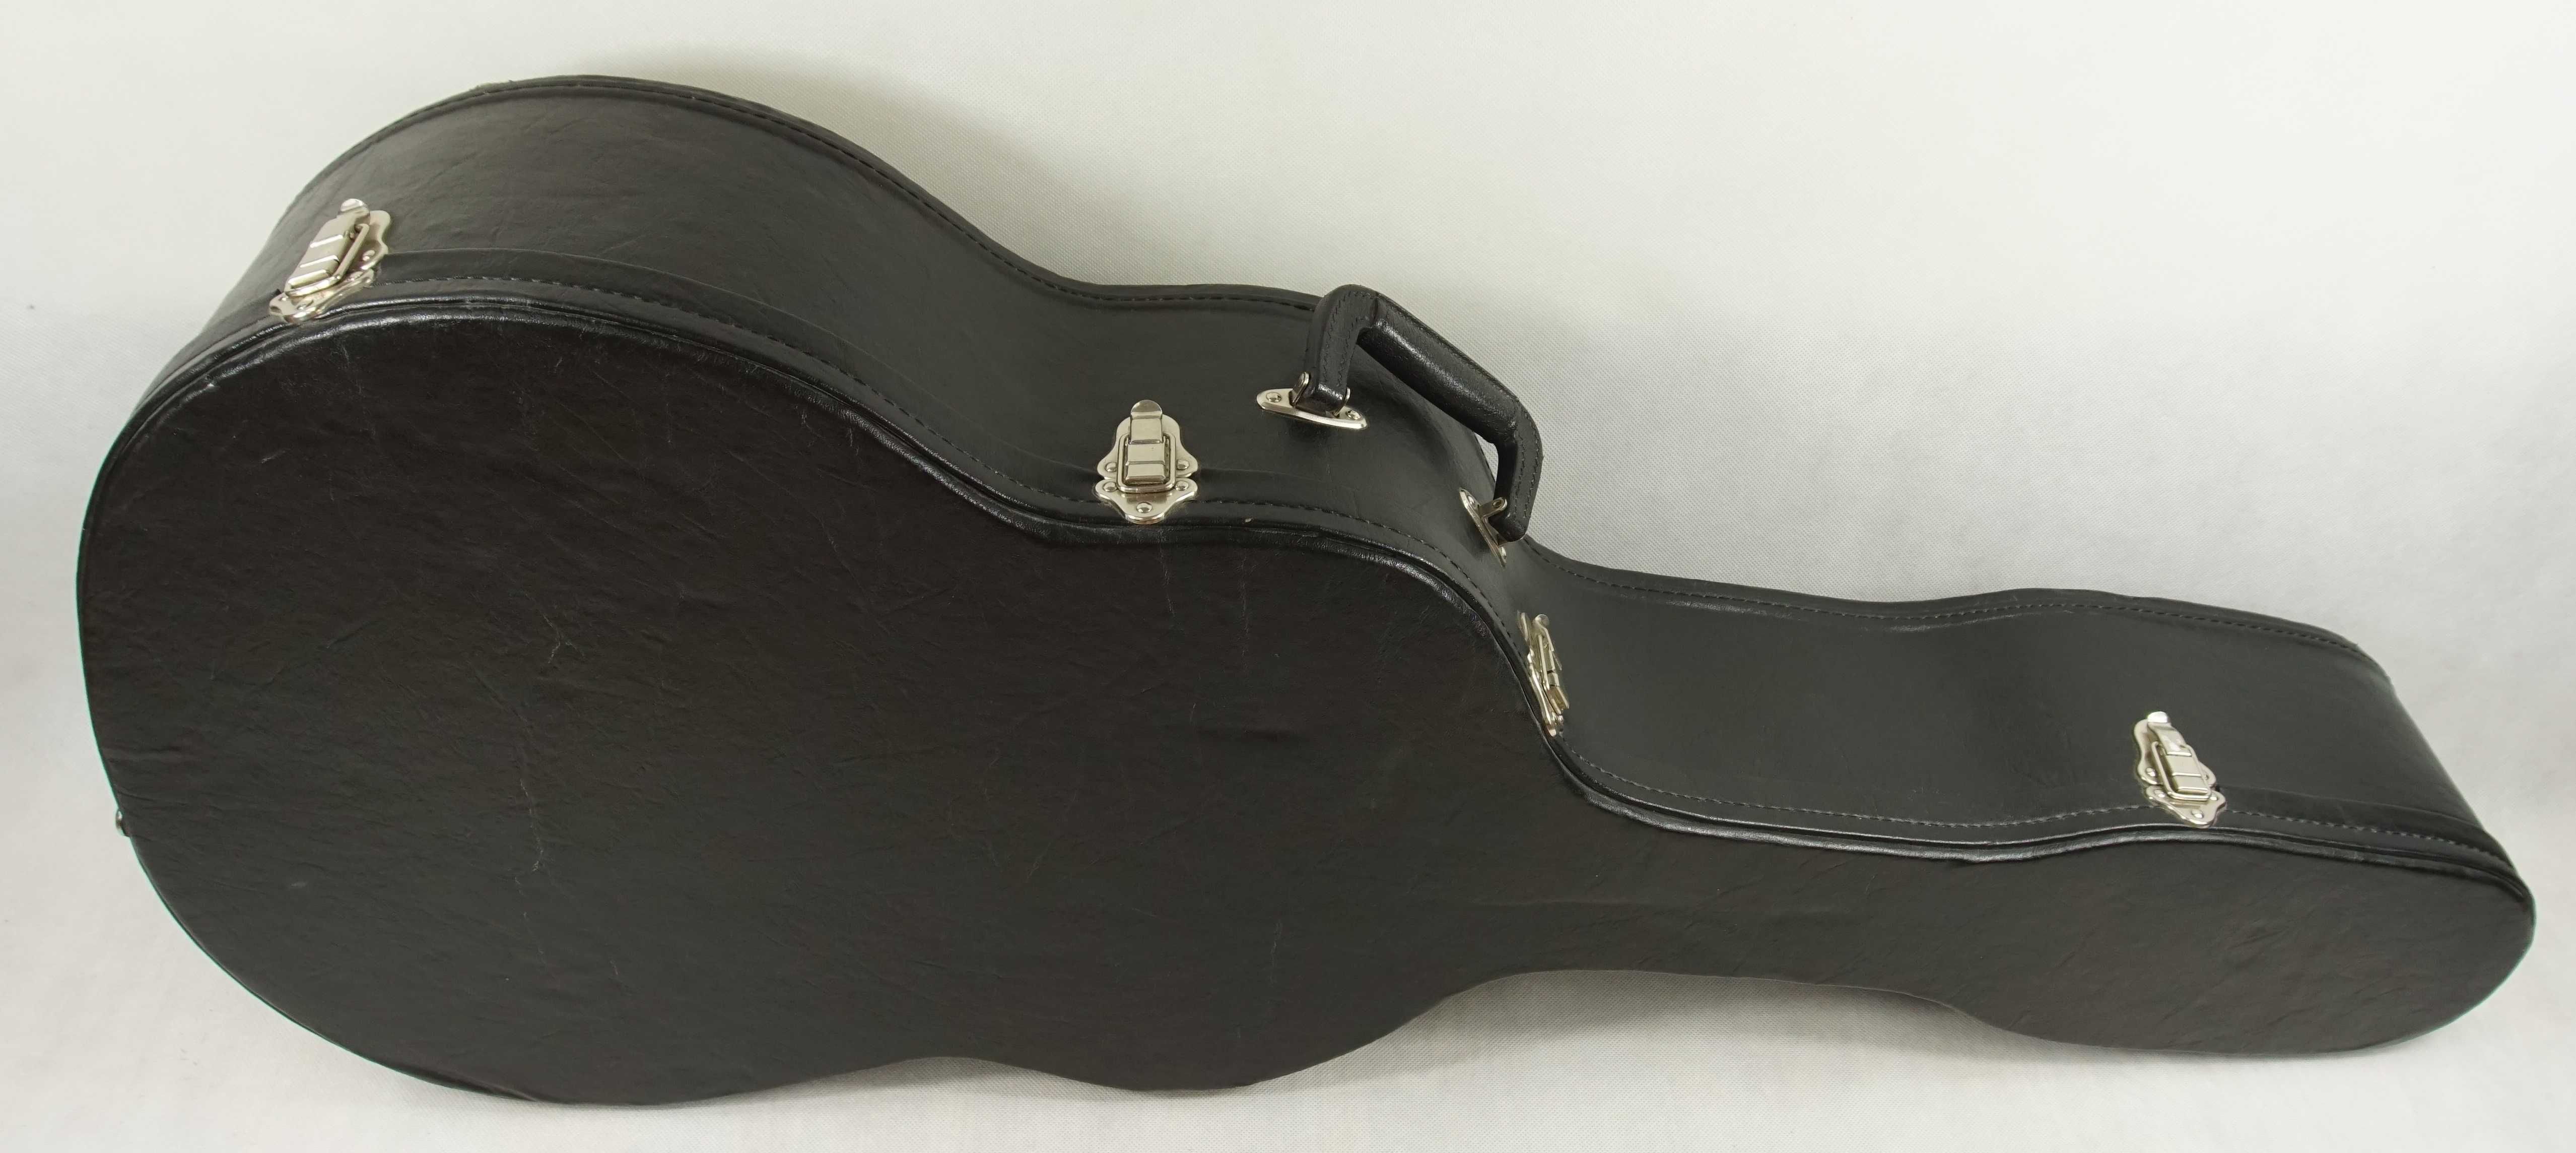 Gitara EPIPHONE DR-100 EB z pokrowcem Kisielewski (w sklepie 1150).